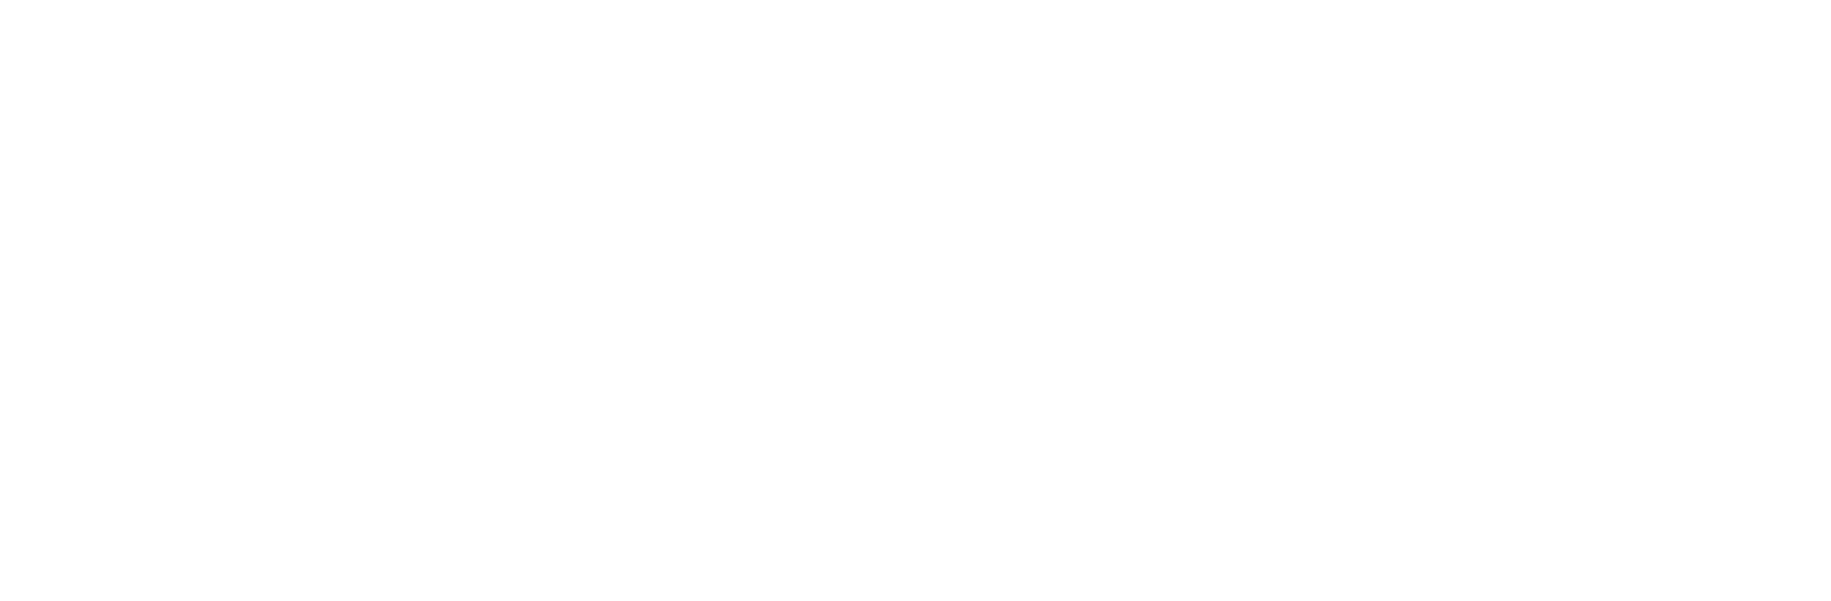 QSXL Logo White